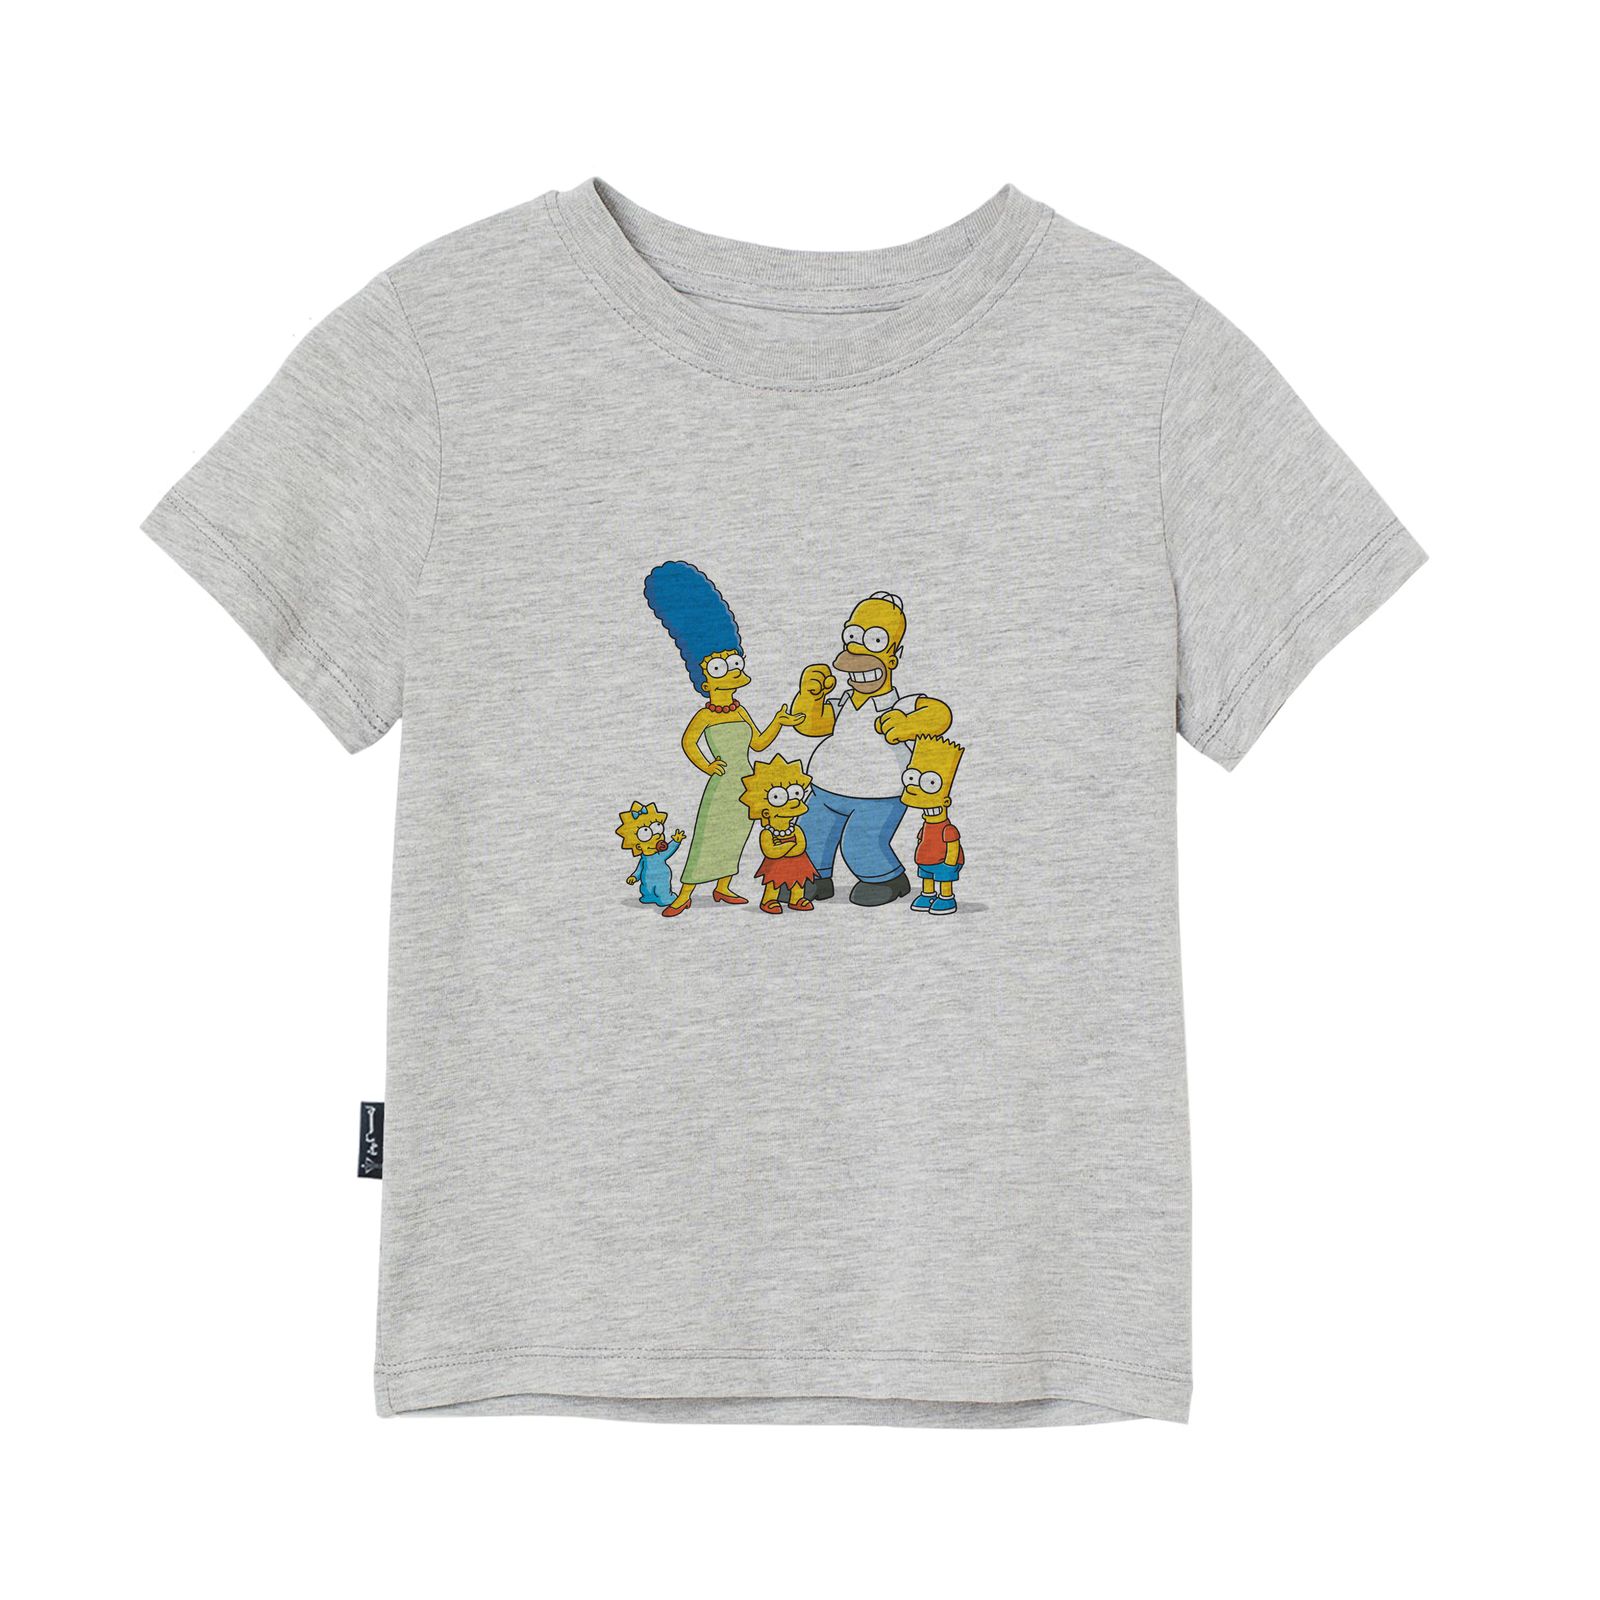 تی شرت آستین کوتاه بچگانه به رسم مدل سیمپسون ها کد 1131 -  - 3